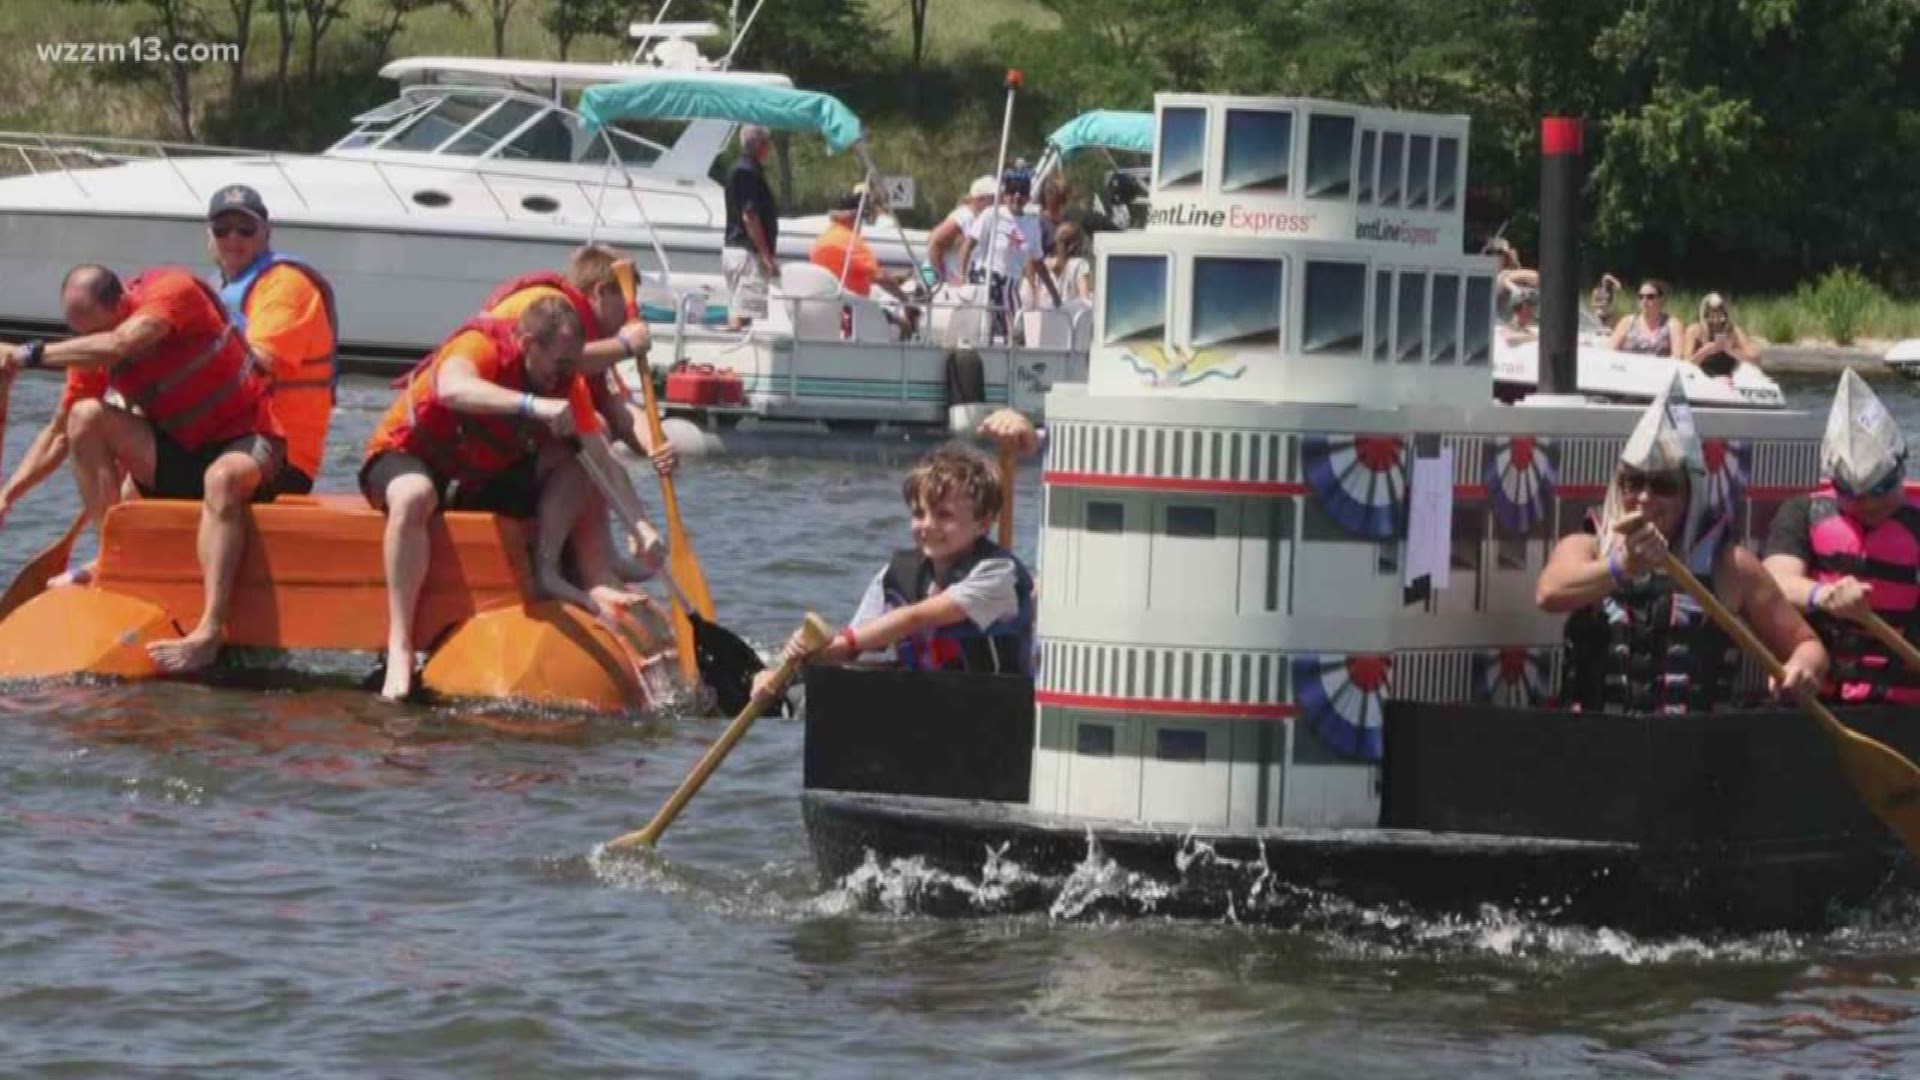 Cardboard boat race a festival favorite